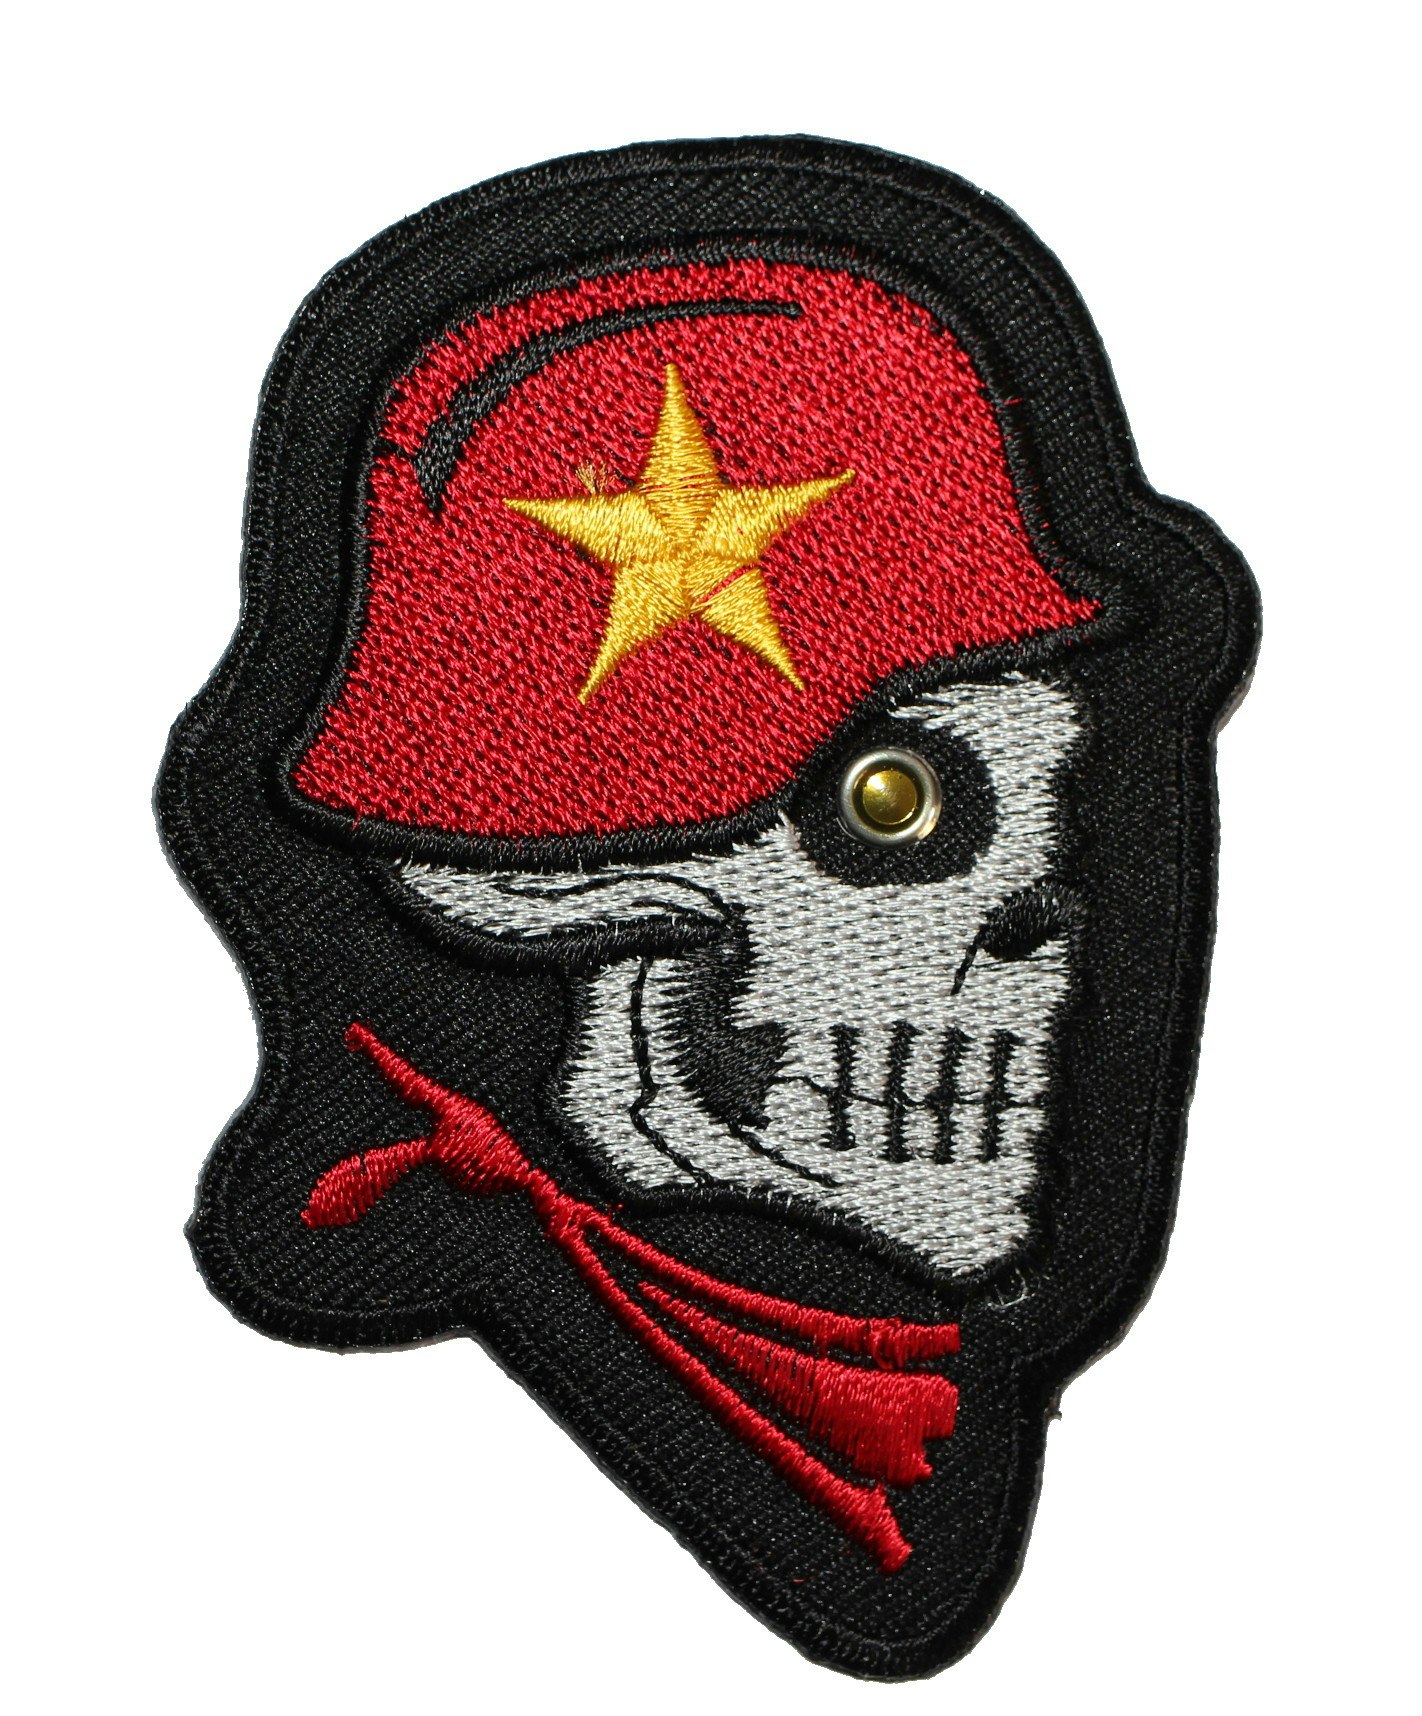 Skull/ helmet/ star patch